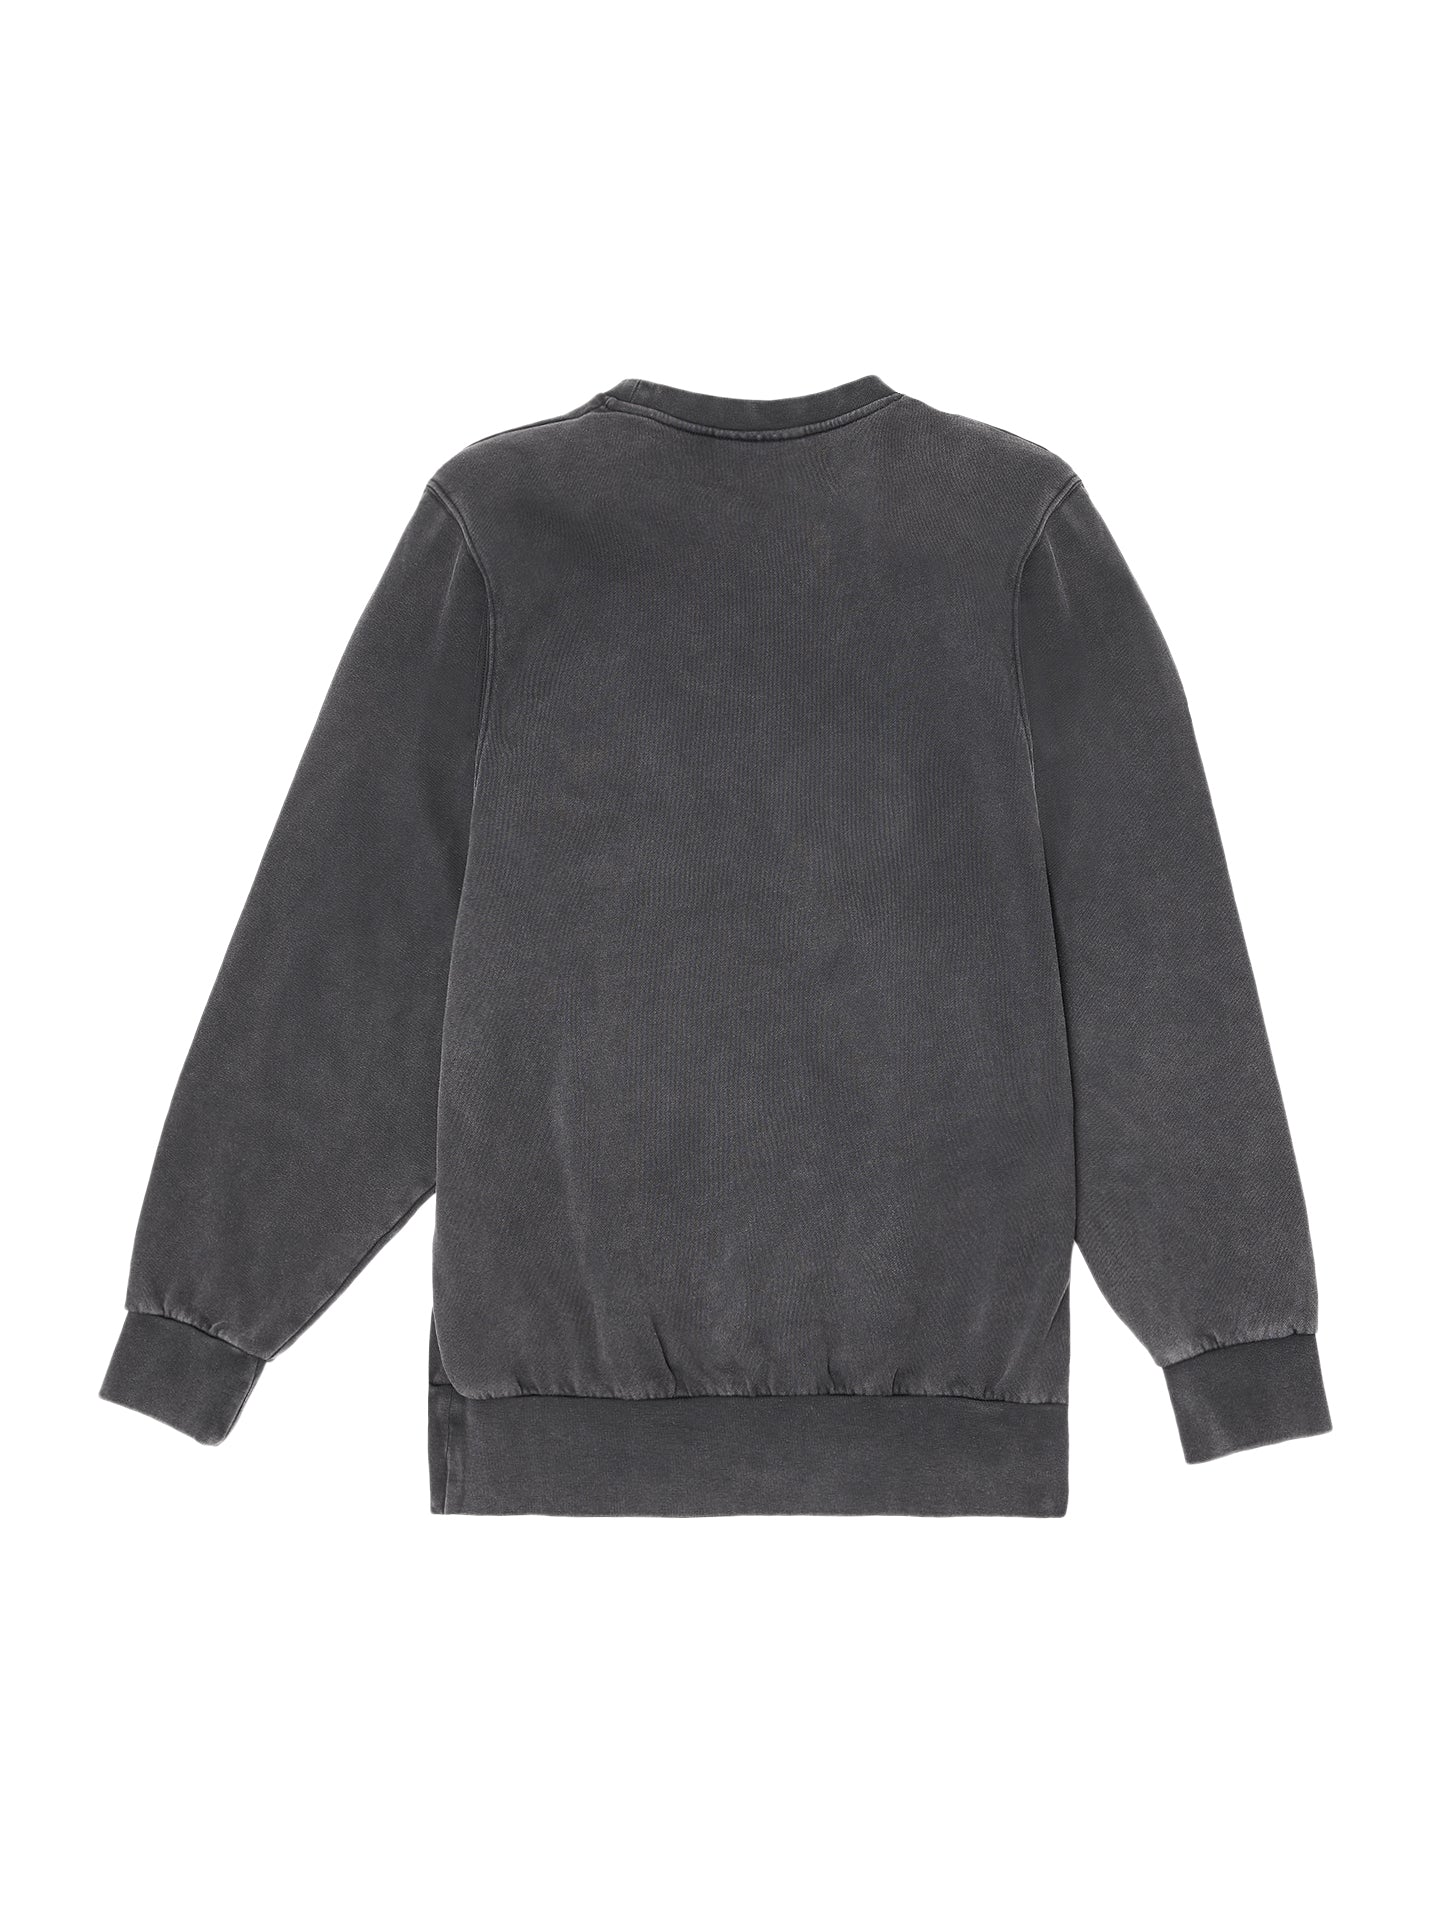 Shoulder Pads Sweater - Black